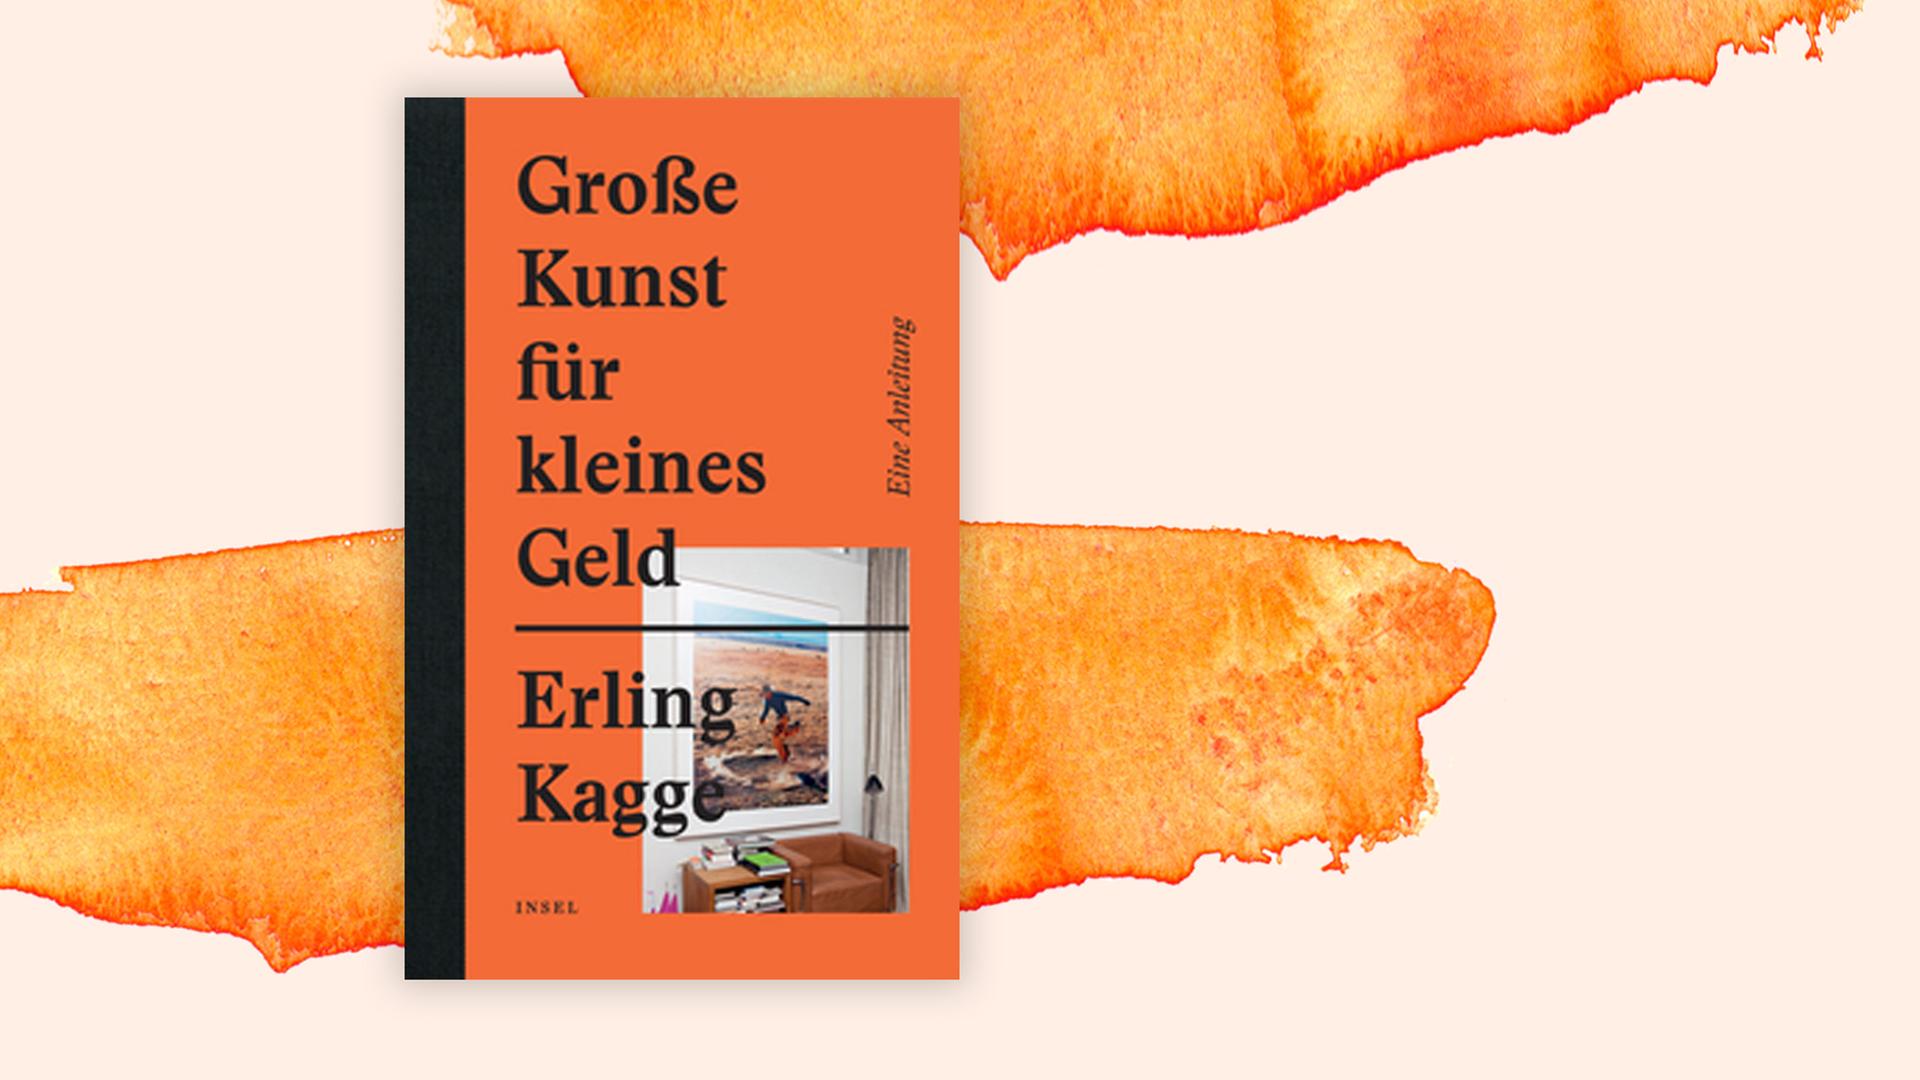 Bild zeigt das Cover von Erling Kagges "Große Kunst für kleines Geld", im Hintergrund eine Illustration.